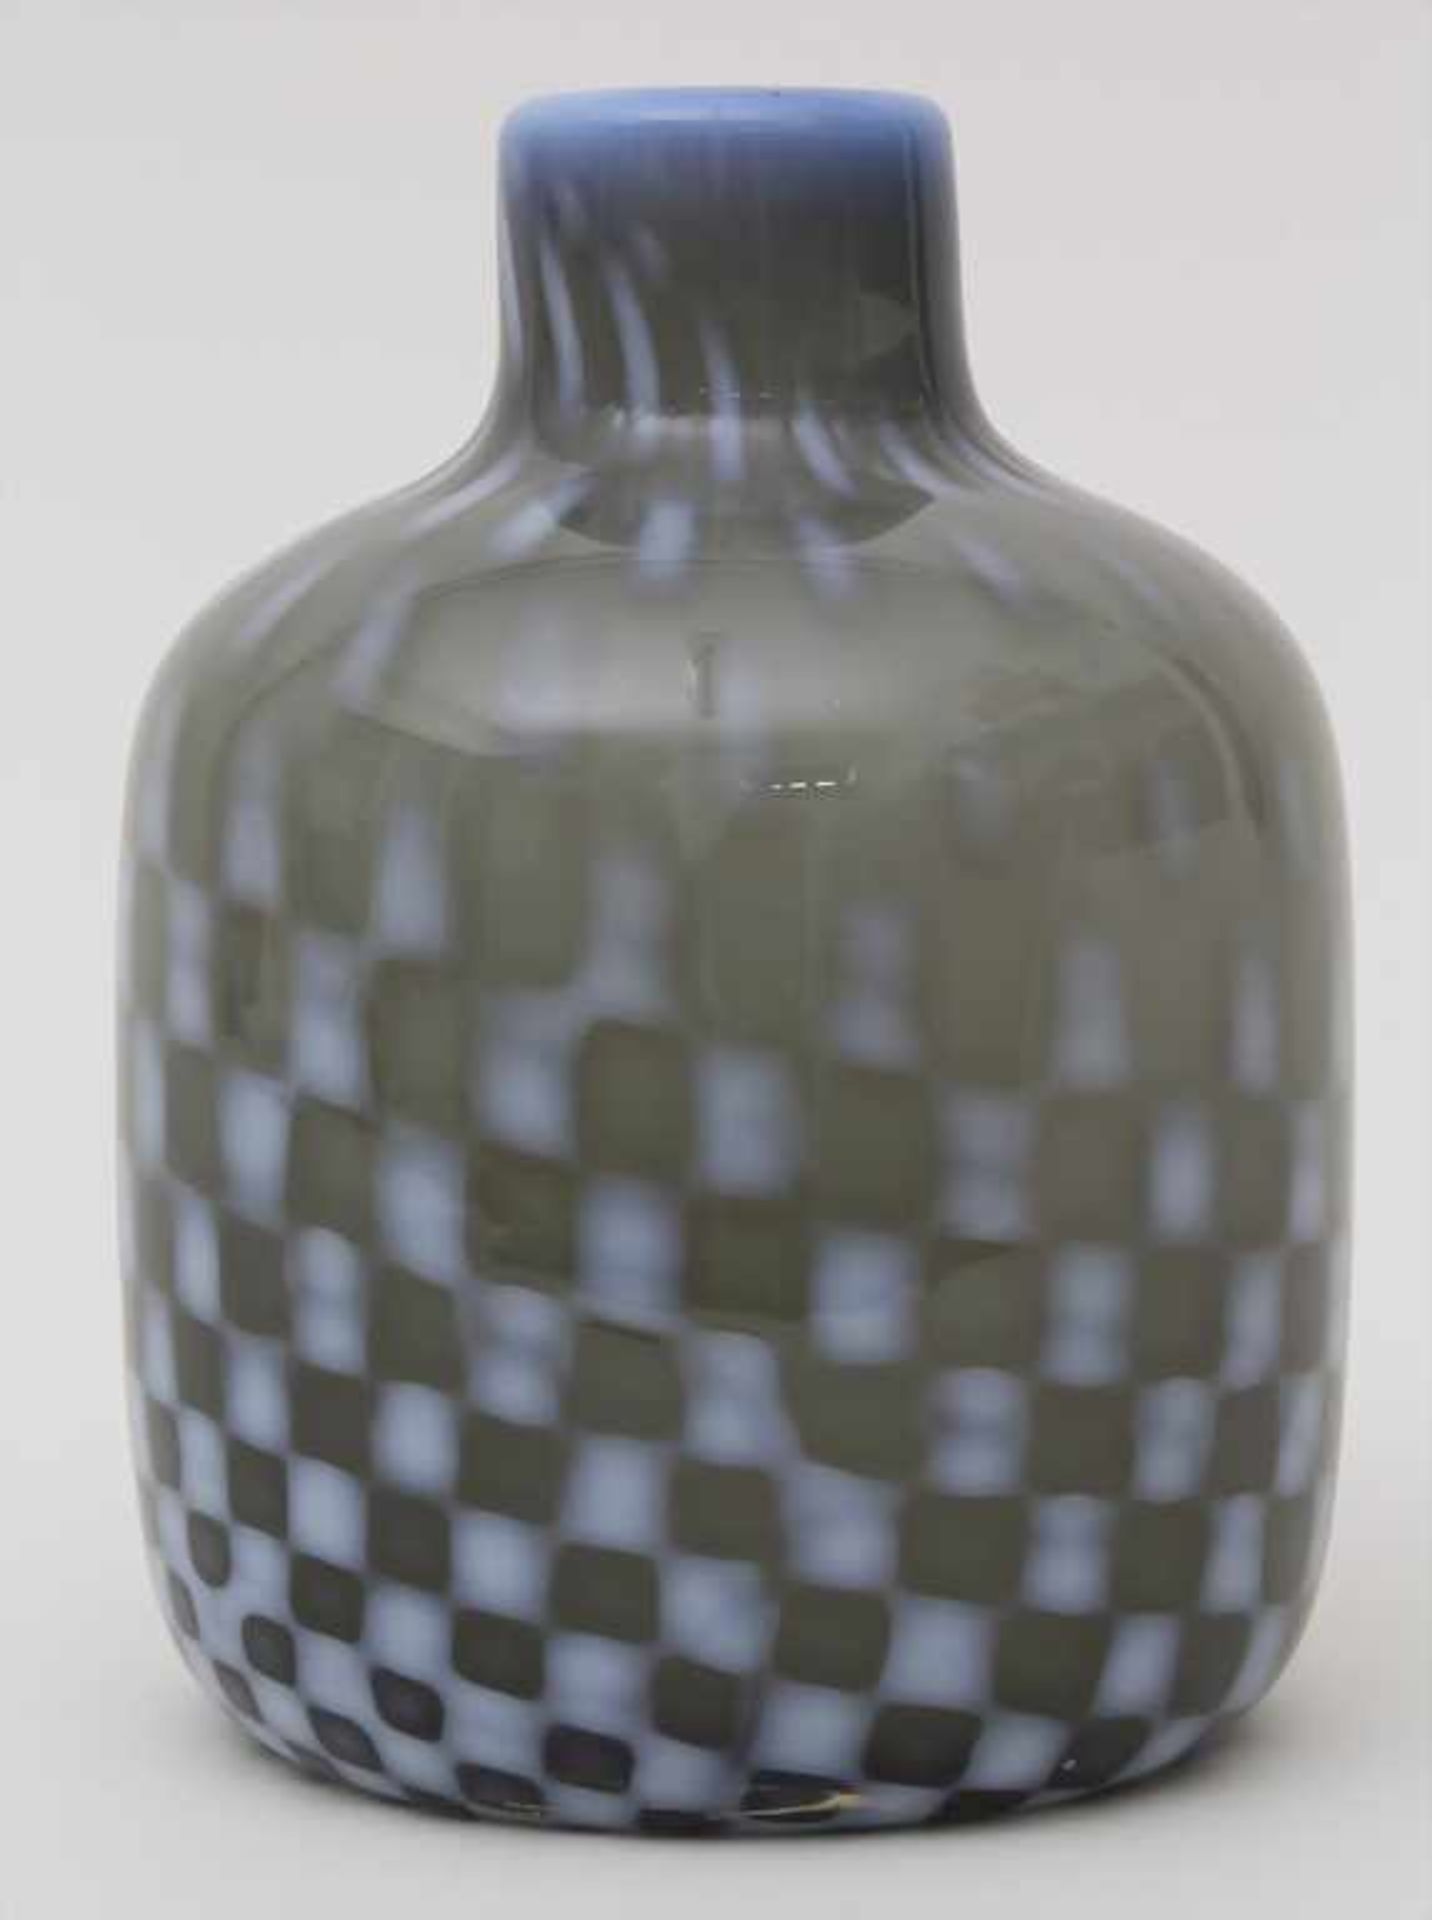 Vase / A vase, wohl Barovier und Toso, Murano, 70/80er JahreMaterial: rauchfarbenes Glas, opak - Bild 2 aus 4